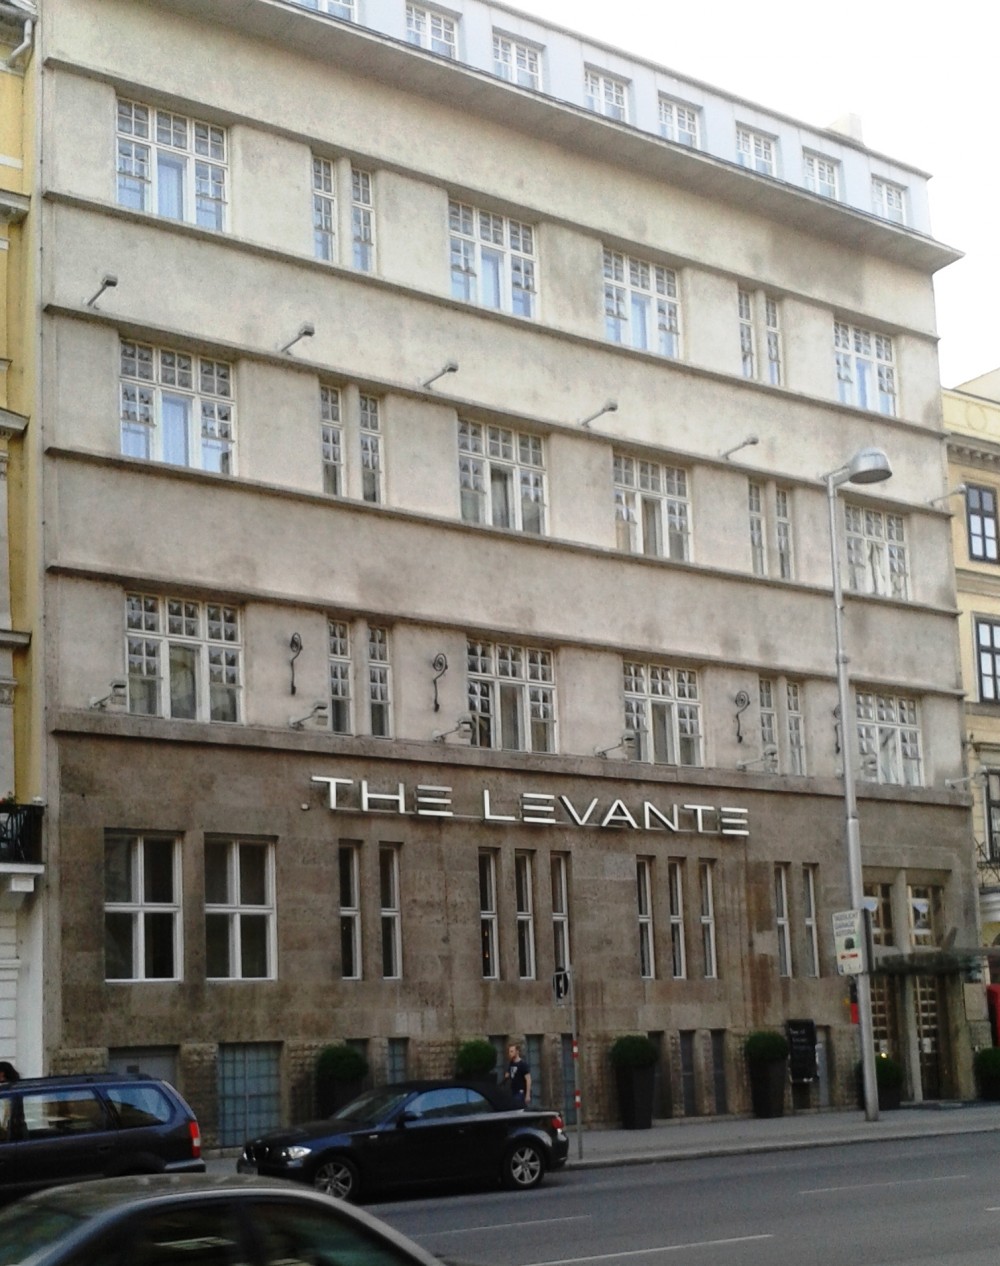 Nemtoi - 'The Levante Parliament Hotel' mit dem Restaurant Nemtoi - Nemtoi - Wien